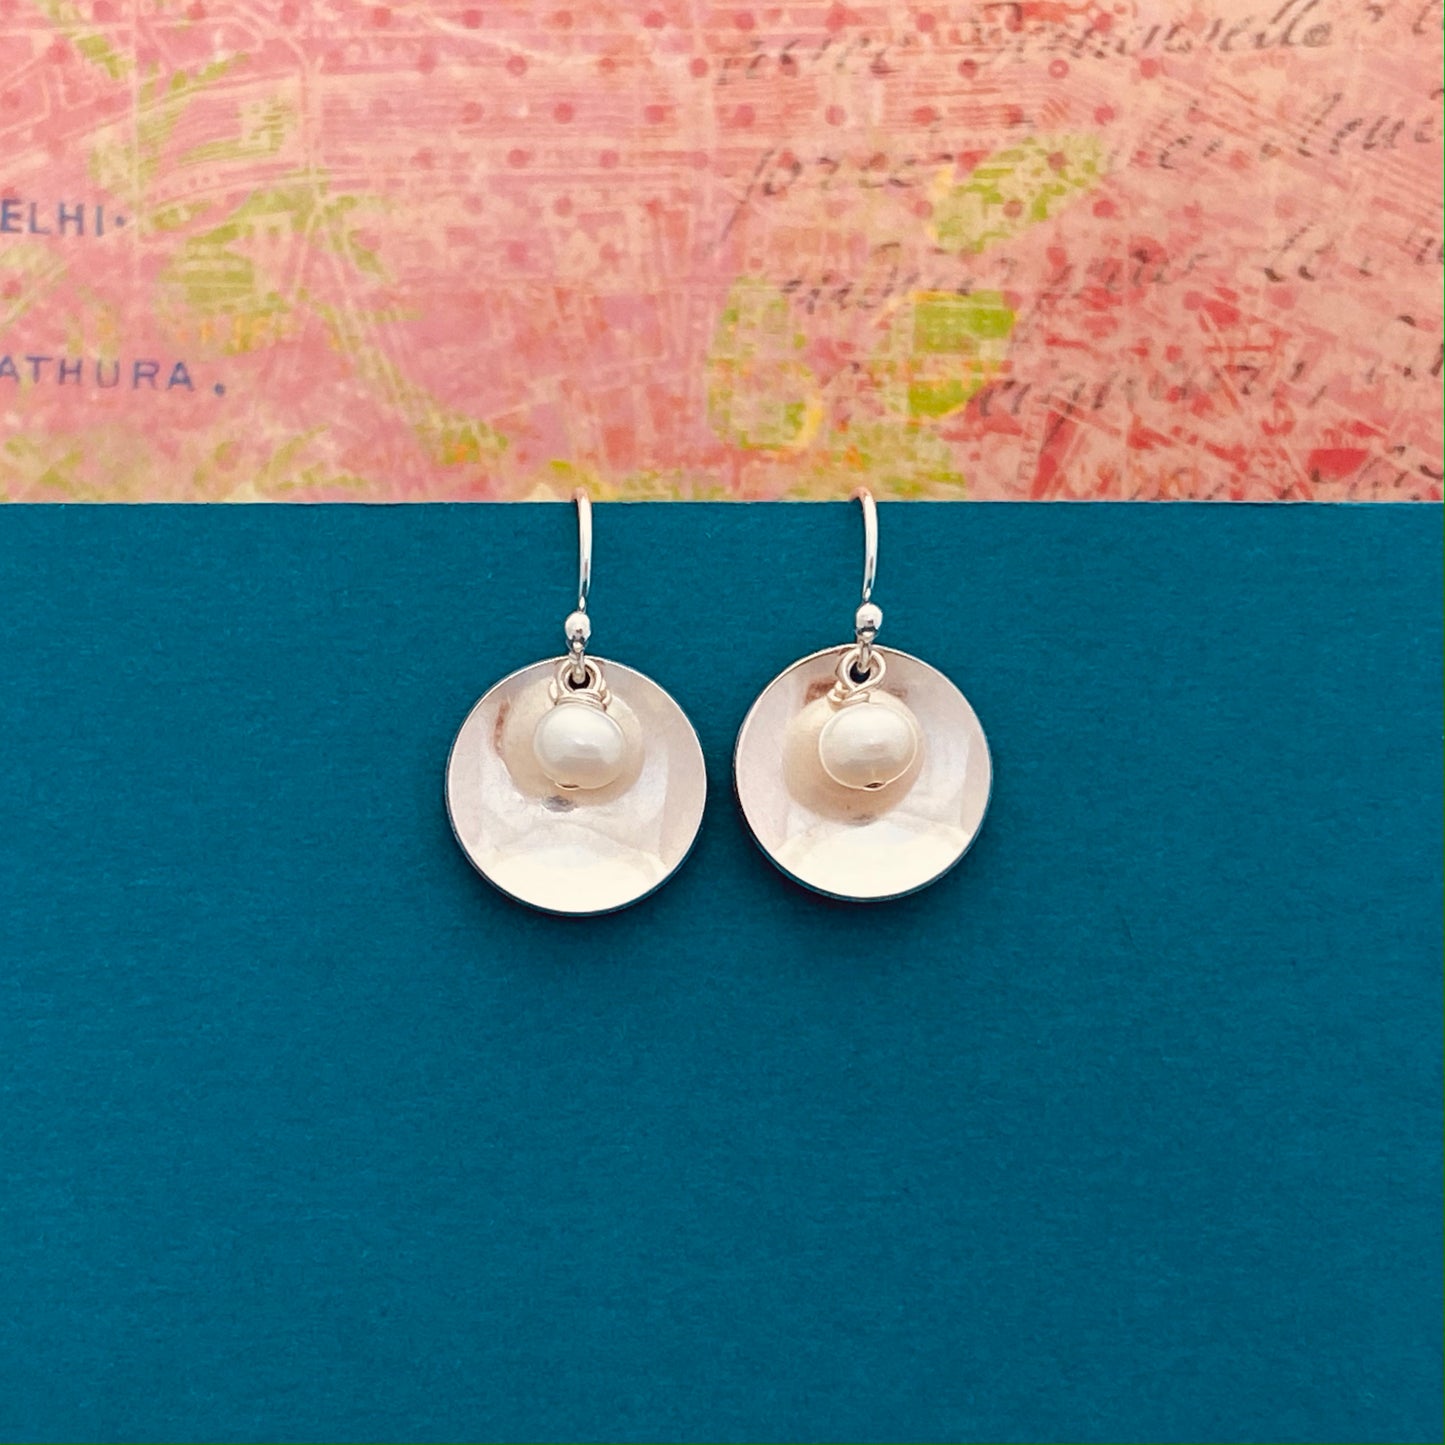 Pearl Disc Earrings, Freshwater Pearl Earrings, White Pearl Earrings, Silver and Pearl Earrings, Bridesmaid Earrings, Sterling Silver Pearls